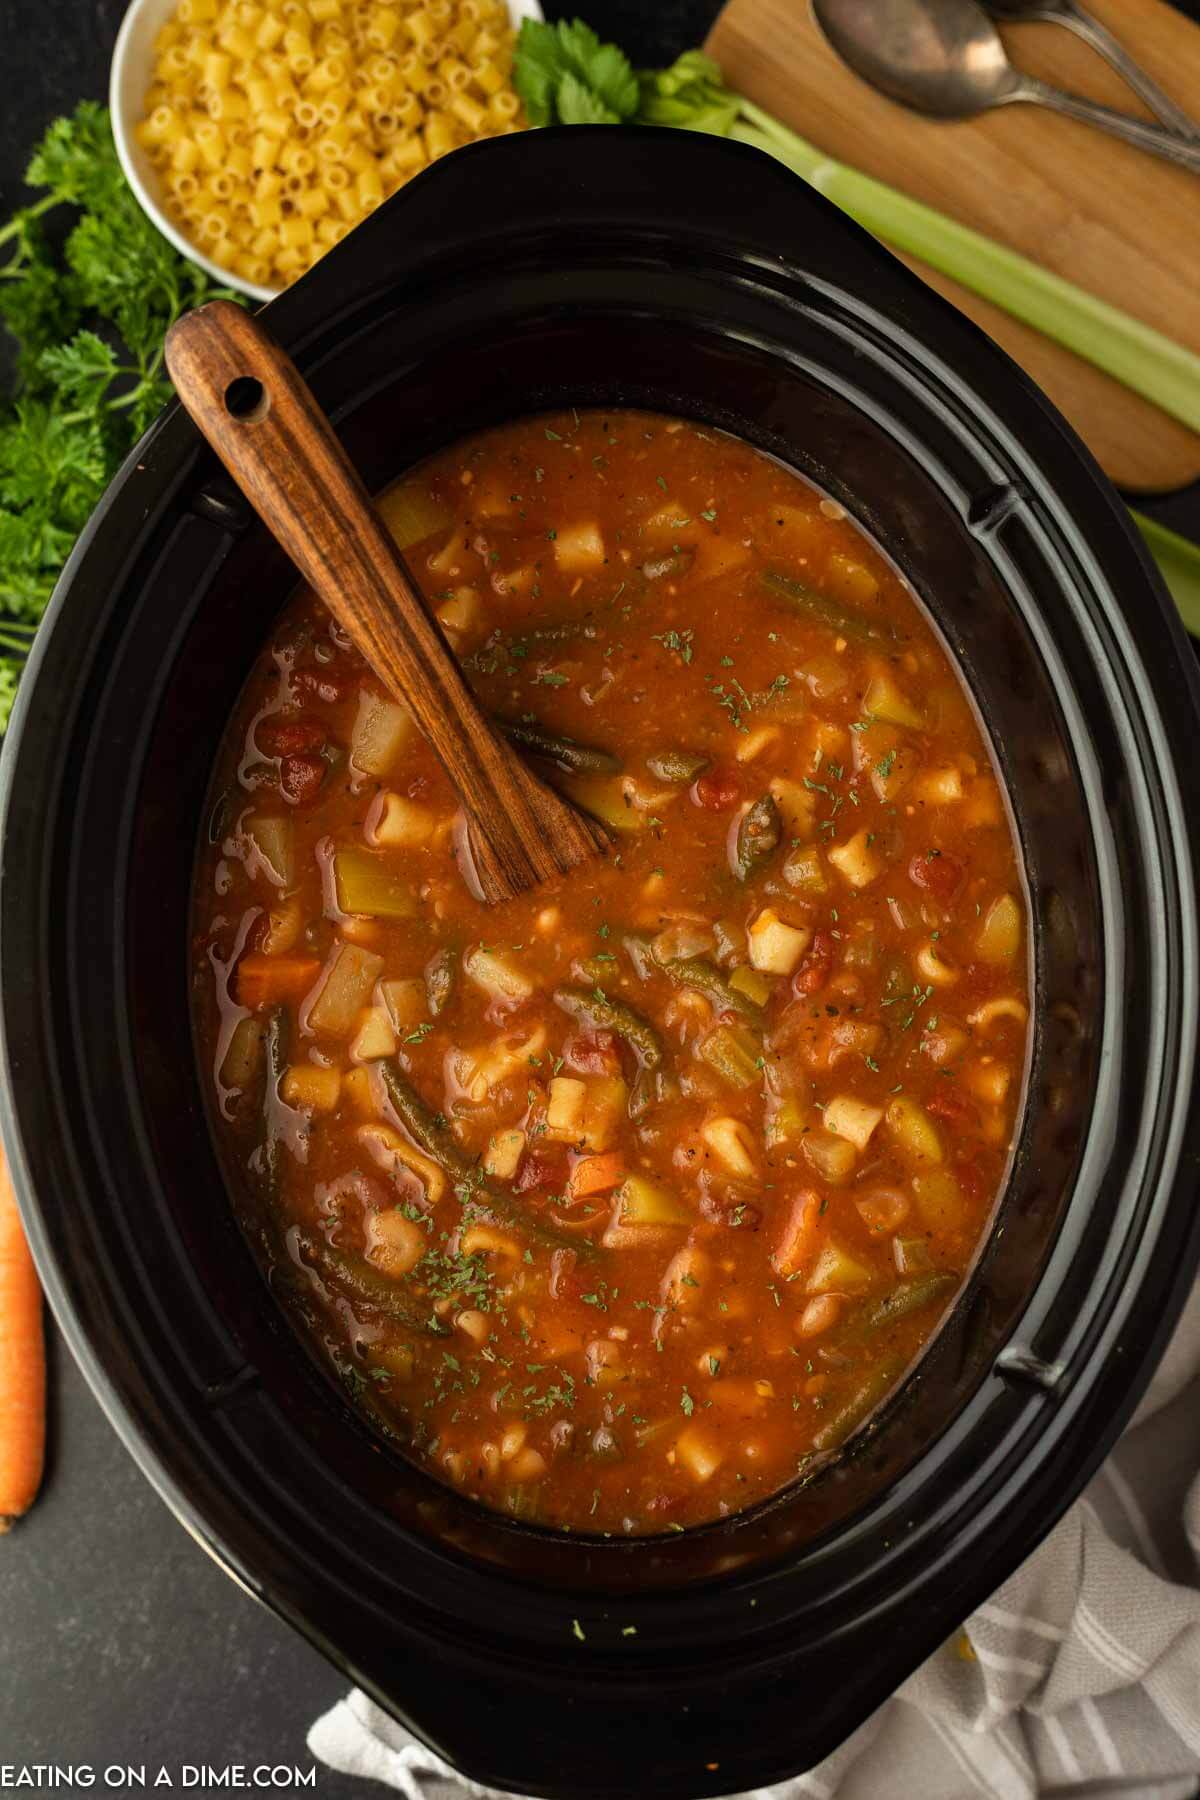 https://www.eatingonadime.com/wp-content/uploads/2022/06/cp-minestrone-soup-2.jpg